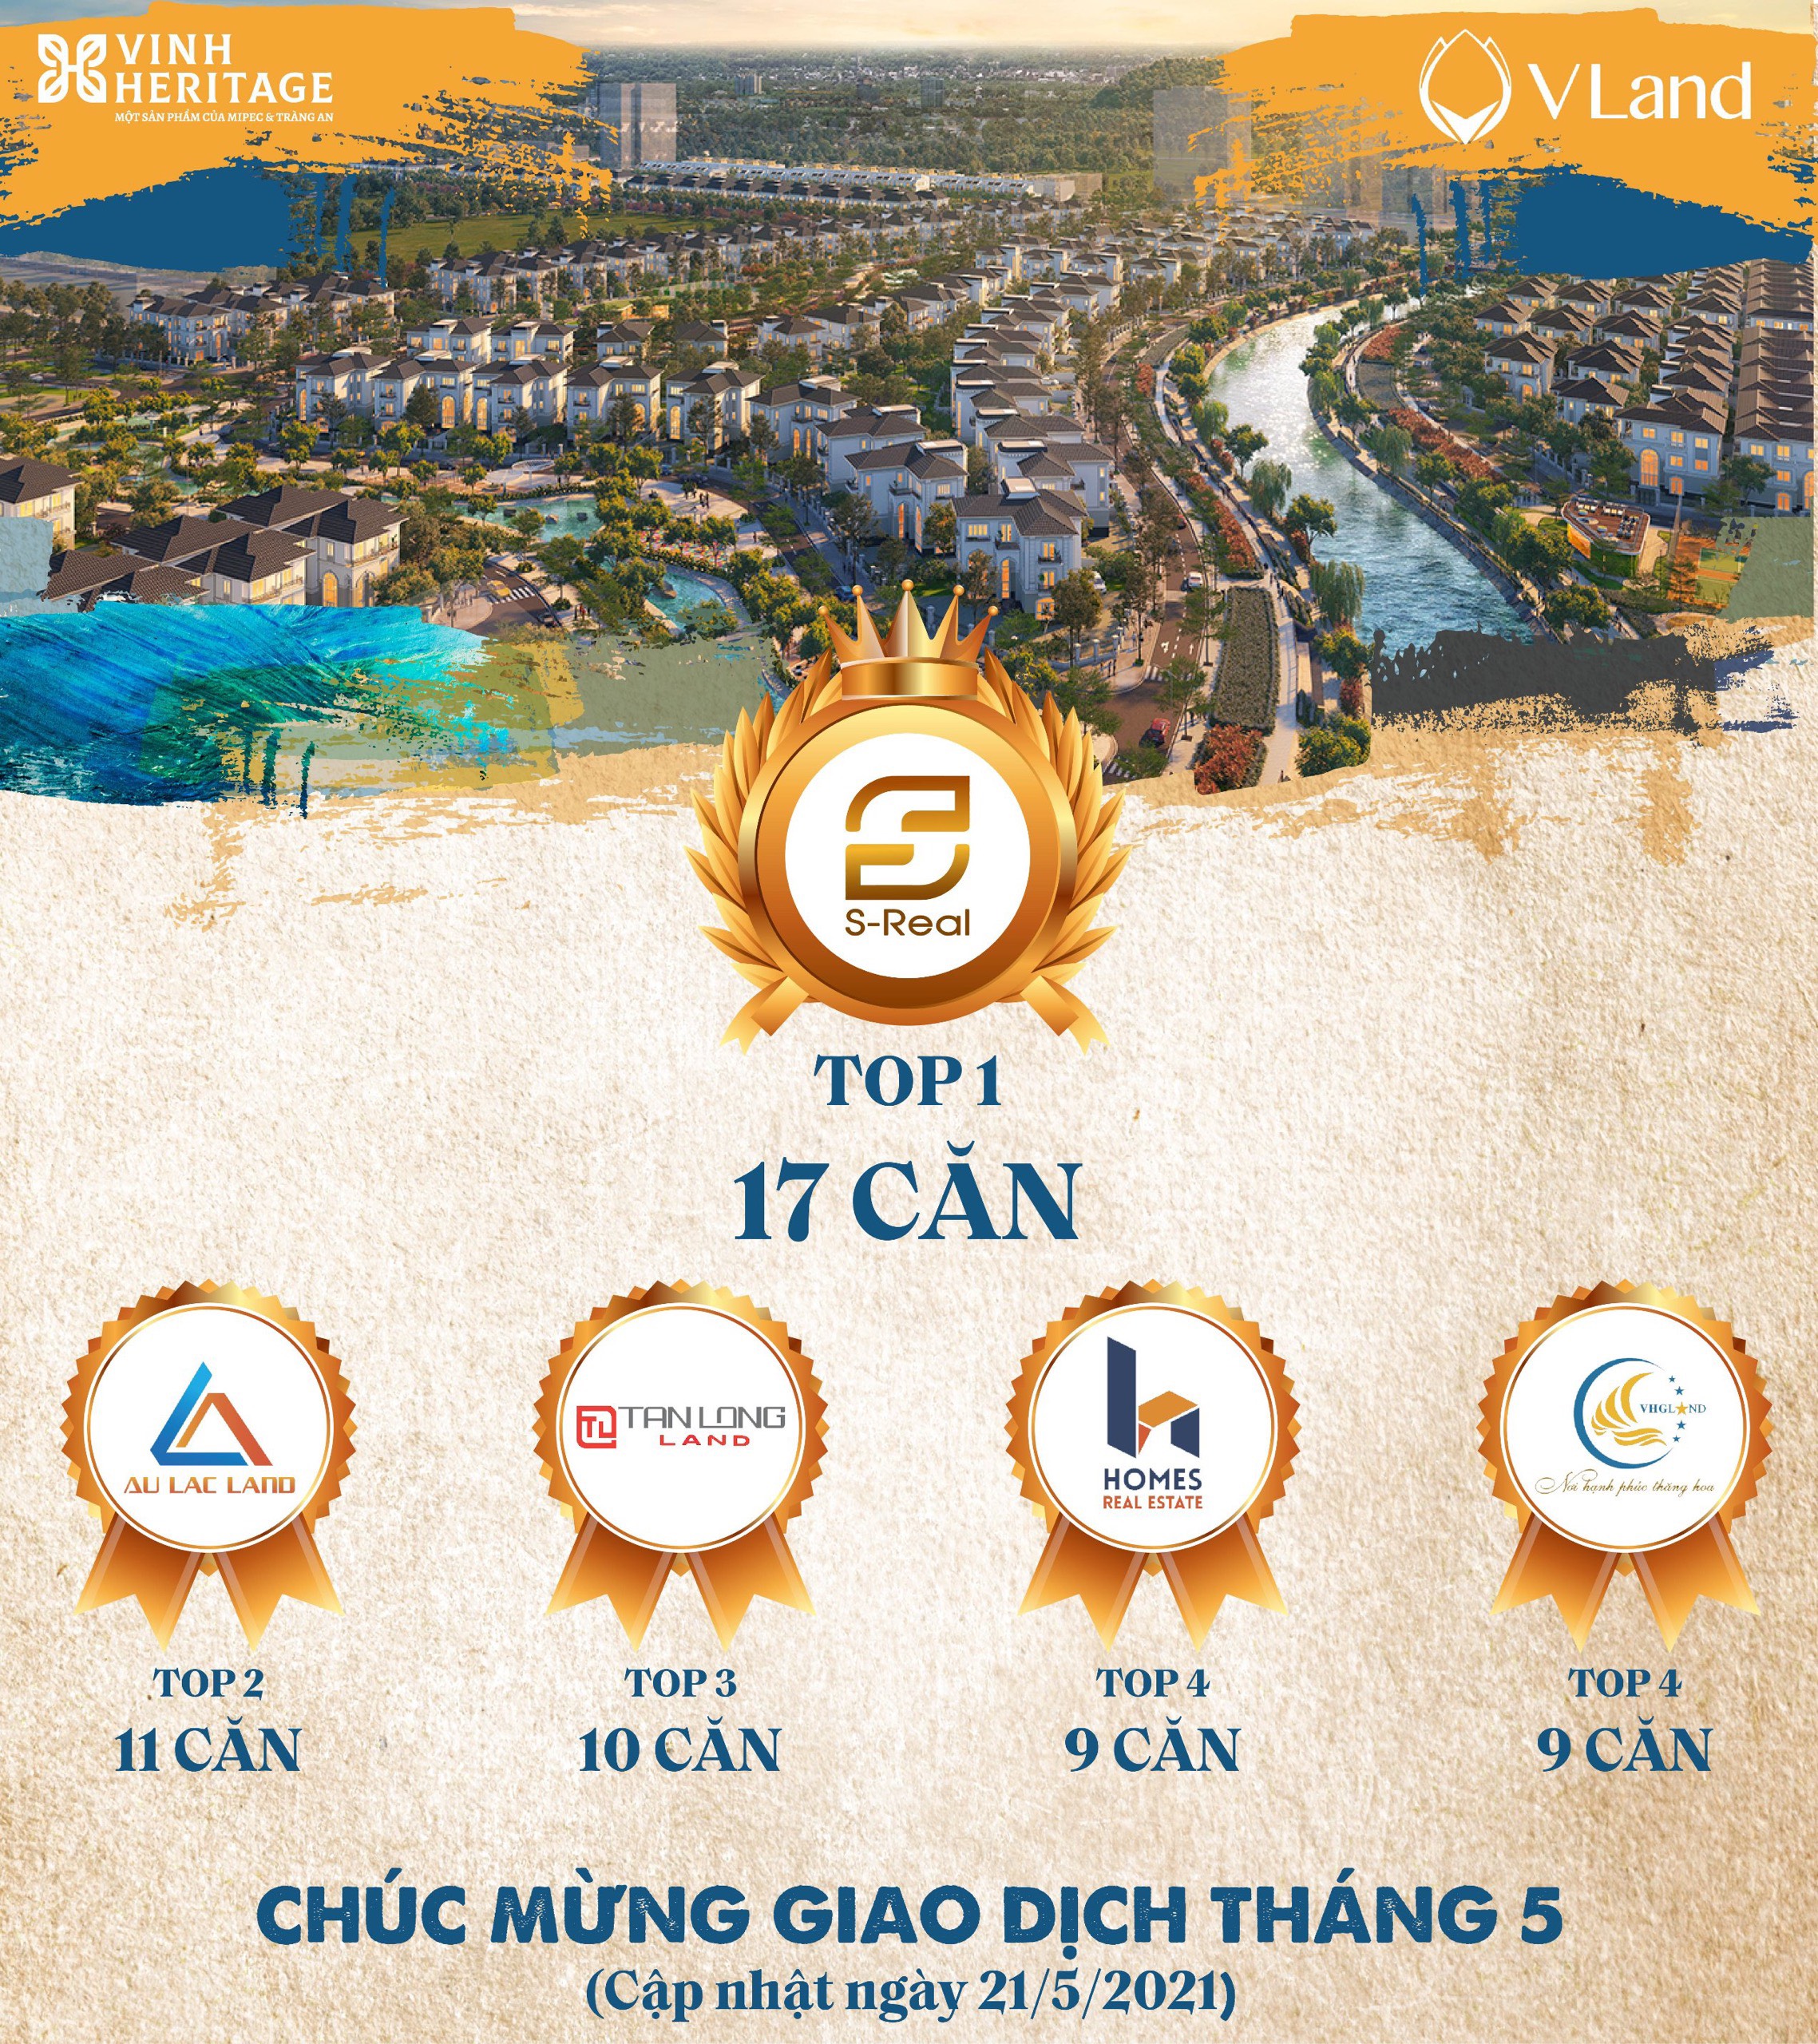 Danh hiệu TOP 1 Seller S-Real vinh dự được V-Land thay mặt Chủ đầu tư Mipec và Tràng An trao tặng